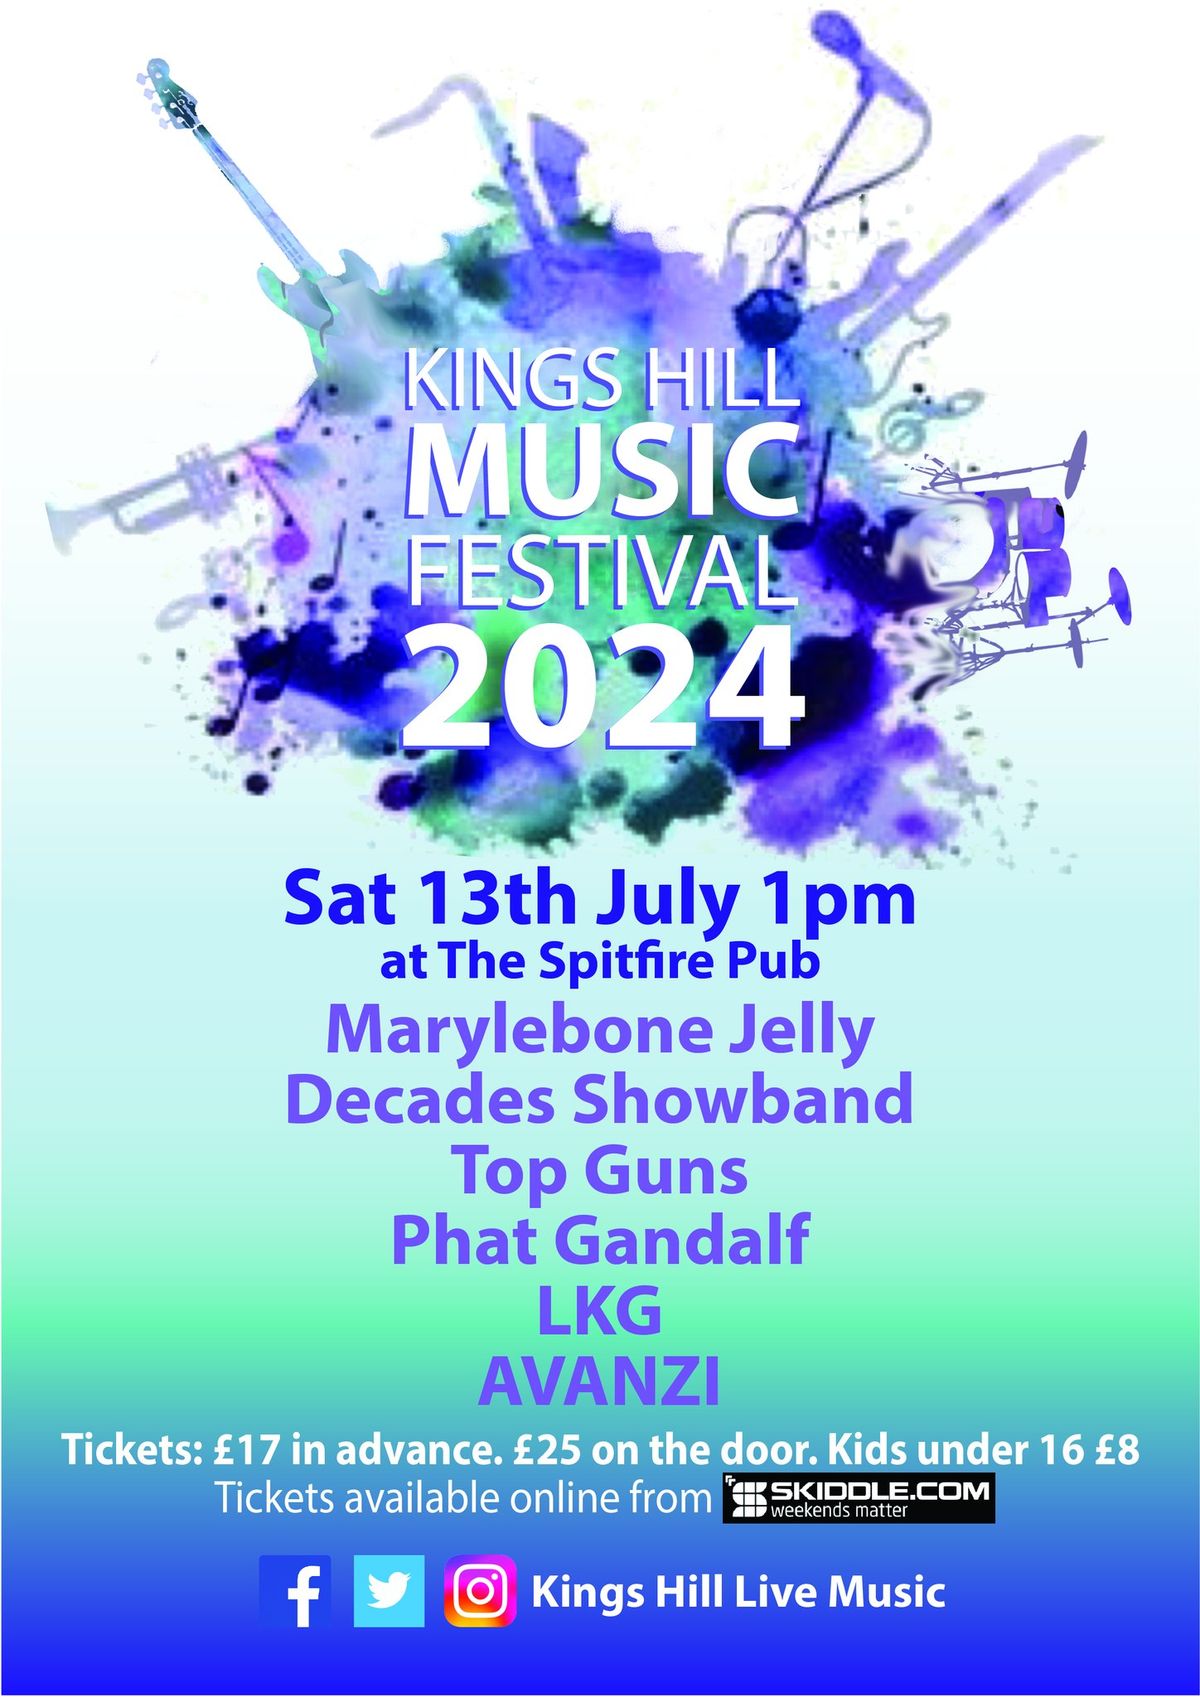 Kings Hill Music Festival 2024! \ud83c\udfb6